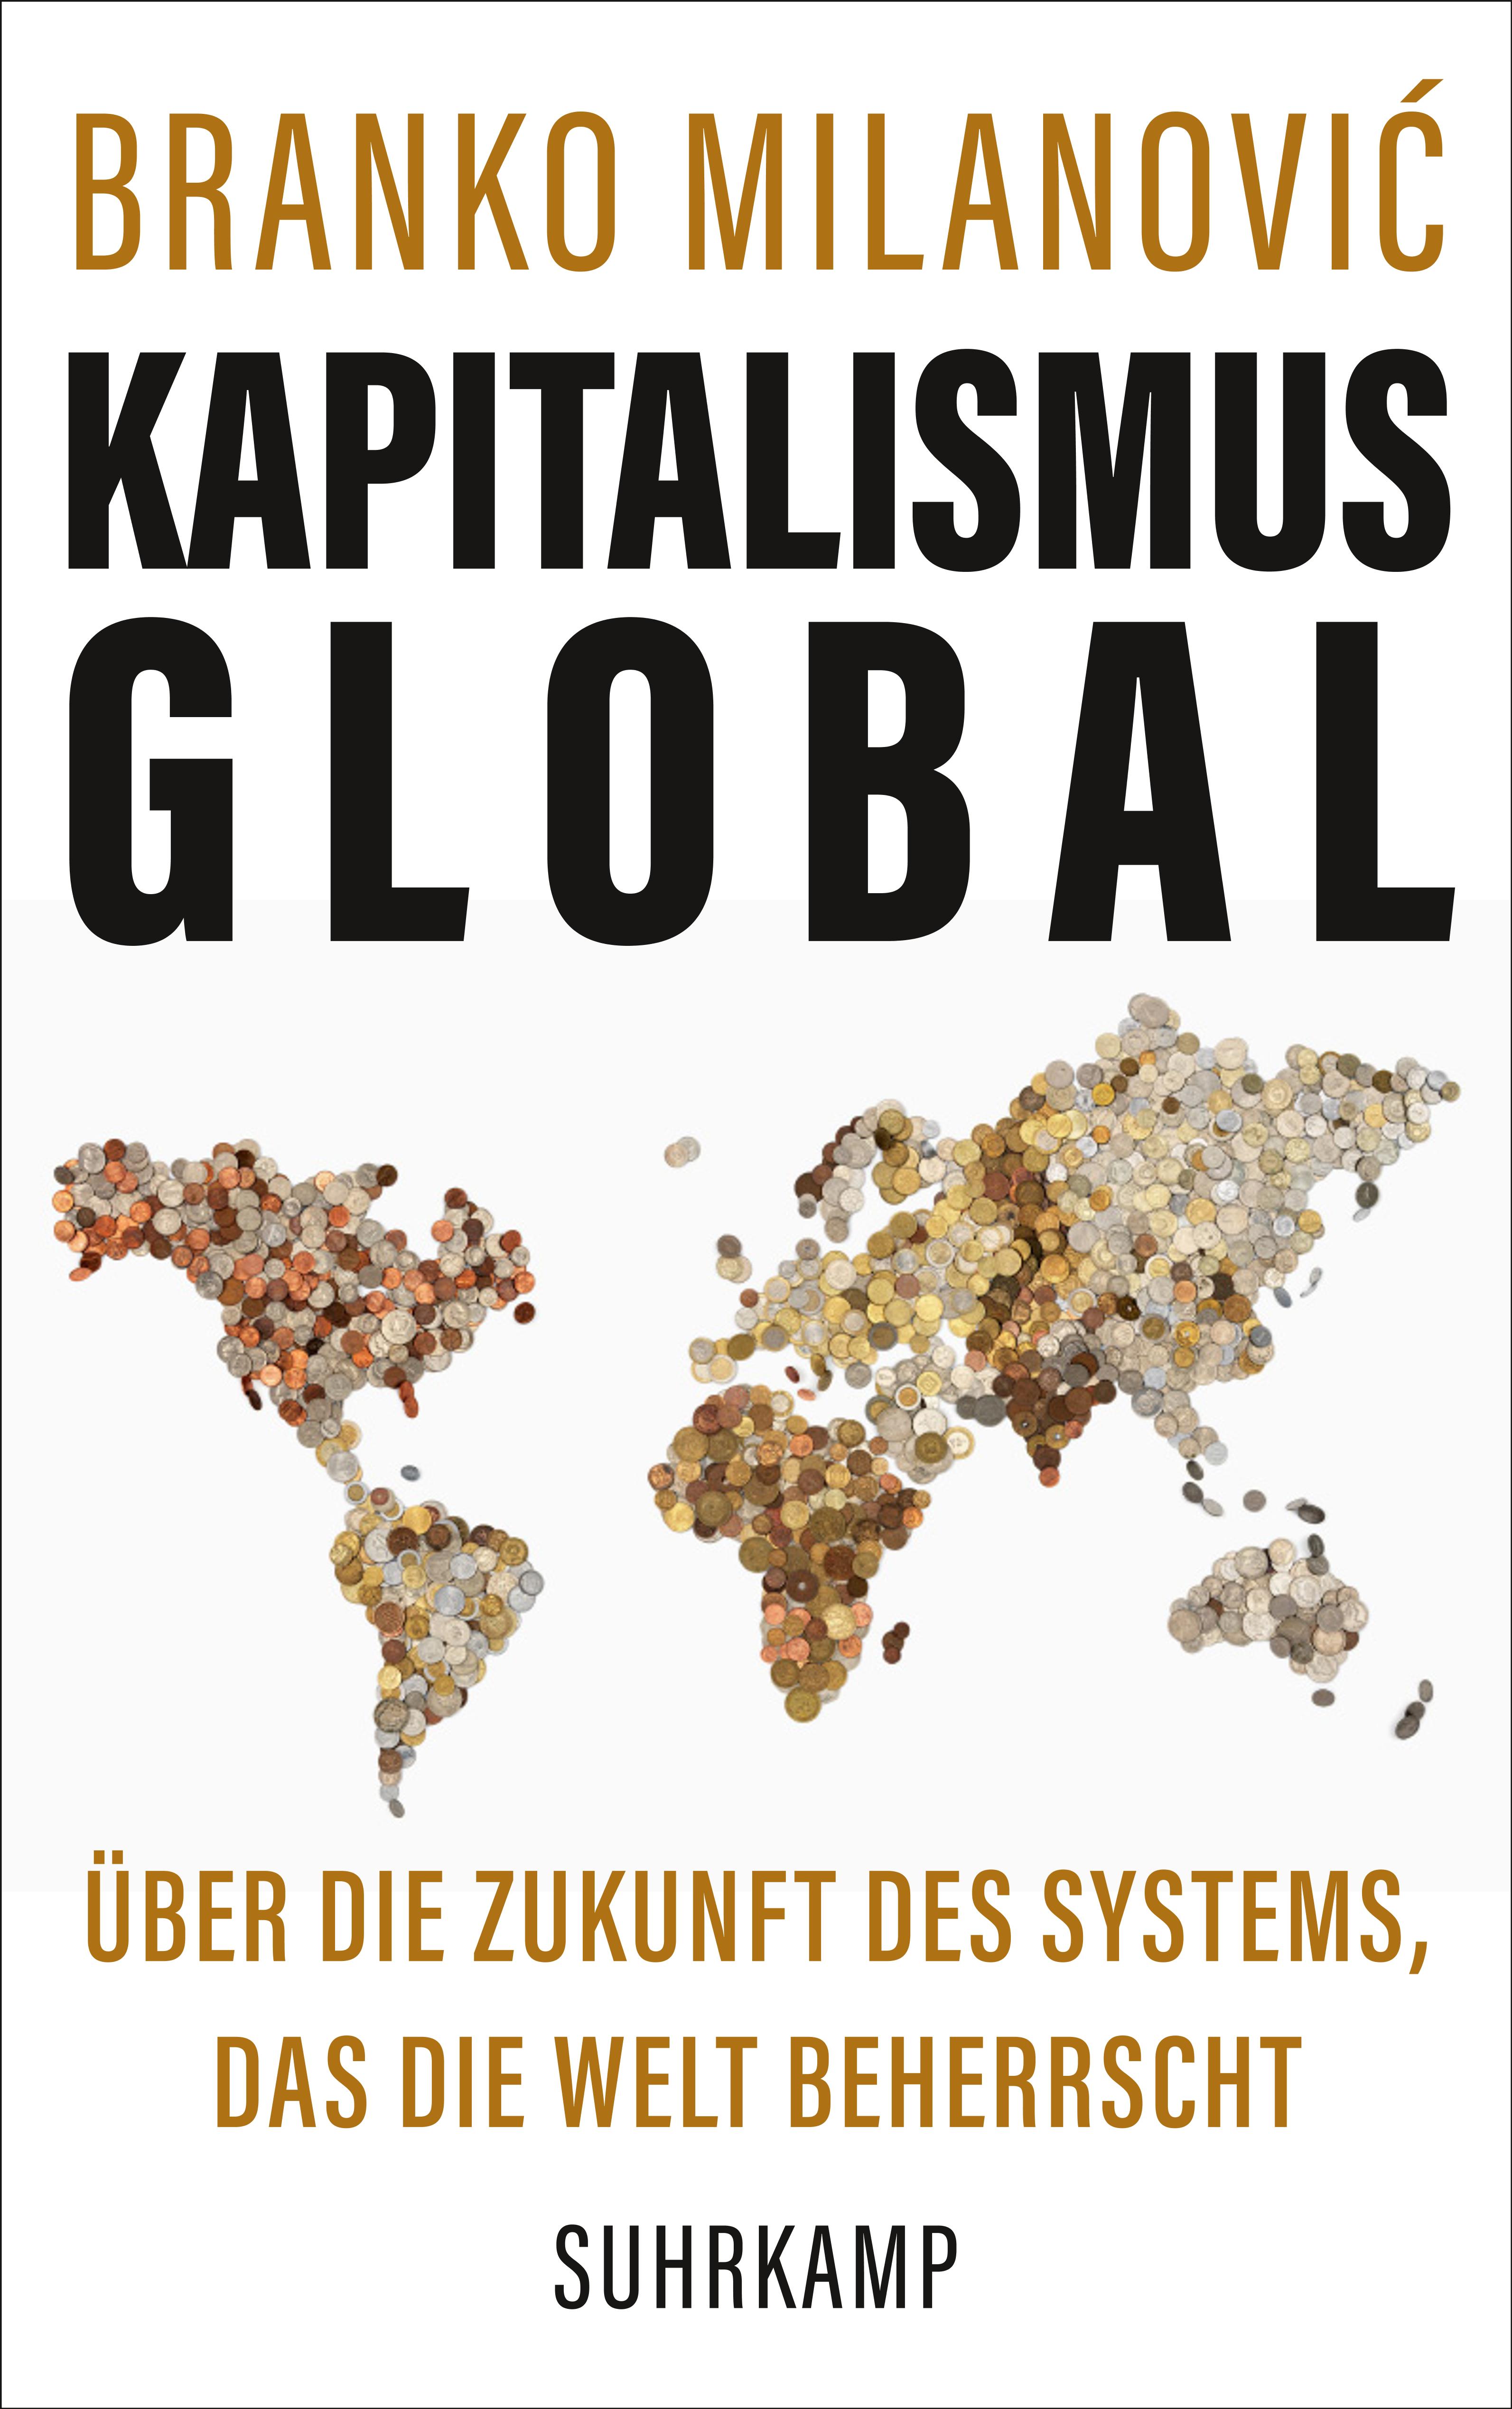 Titelbild von:  Milanovic, Branko (2020). Kapitalismus global Über die Zukunft des Systems, das die Welt beherrscht